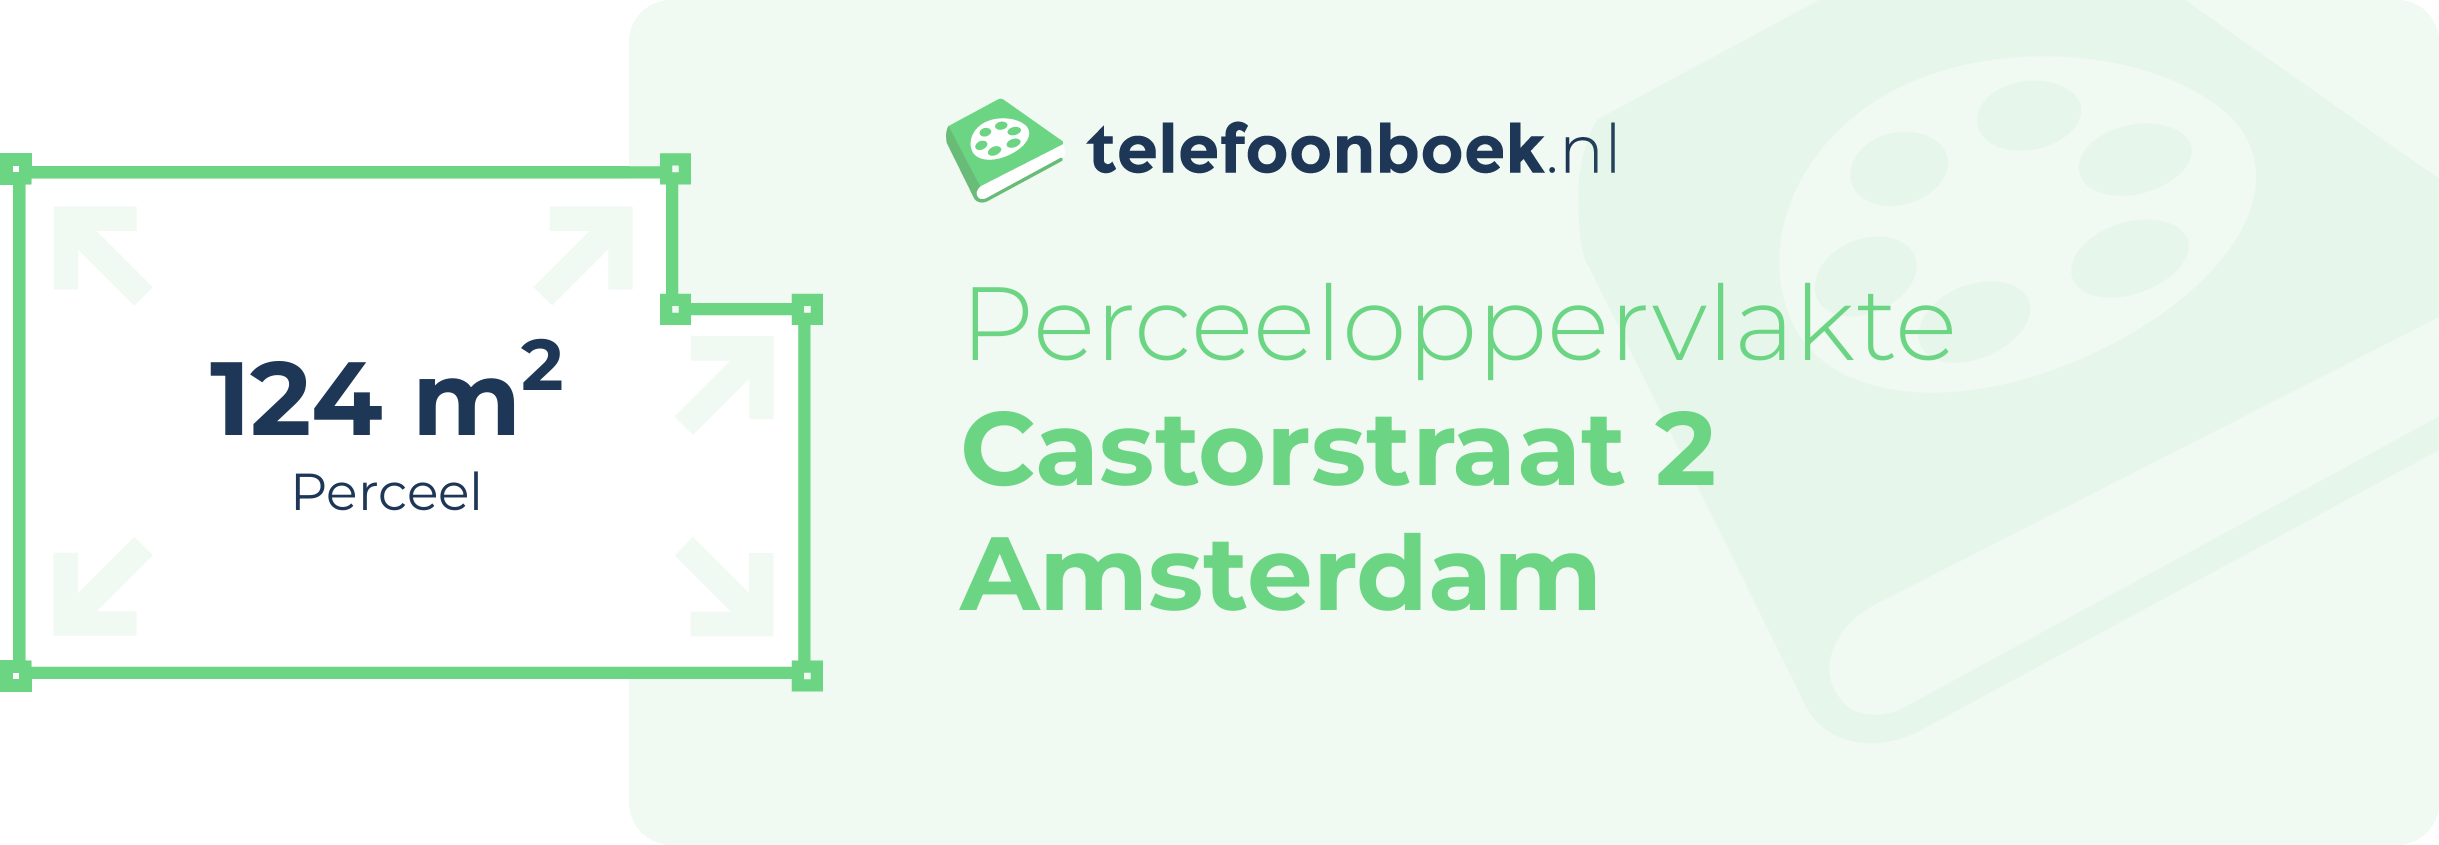 Perceeloppervlakte Castorstraat 2 Amsterdam